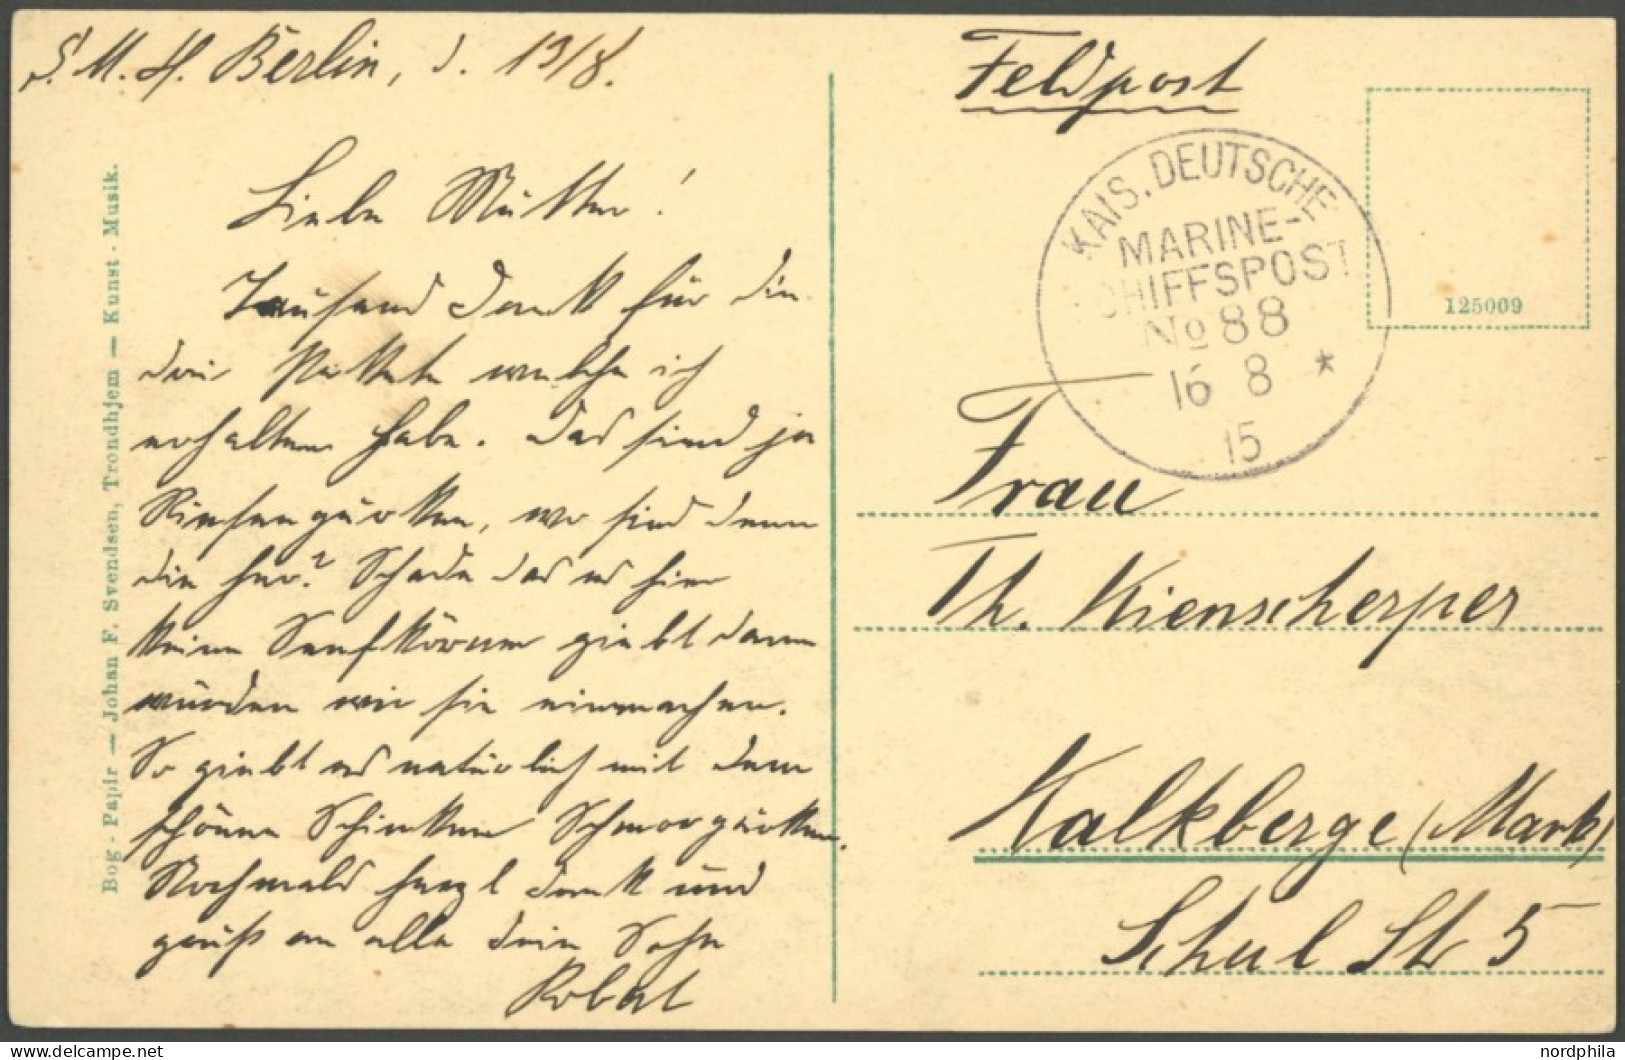 MSP VON 1914 - 1918 88 (S.M.S. BERLIN), 16.8.1915, Feldpostkarte Unzensiert Nach Kalkberge (Mark), Pracht - Schiffahrt